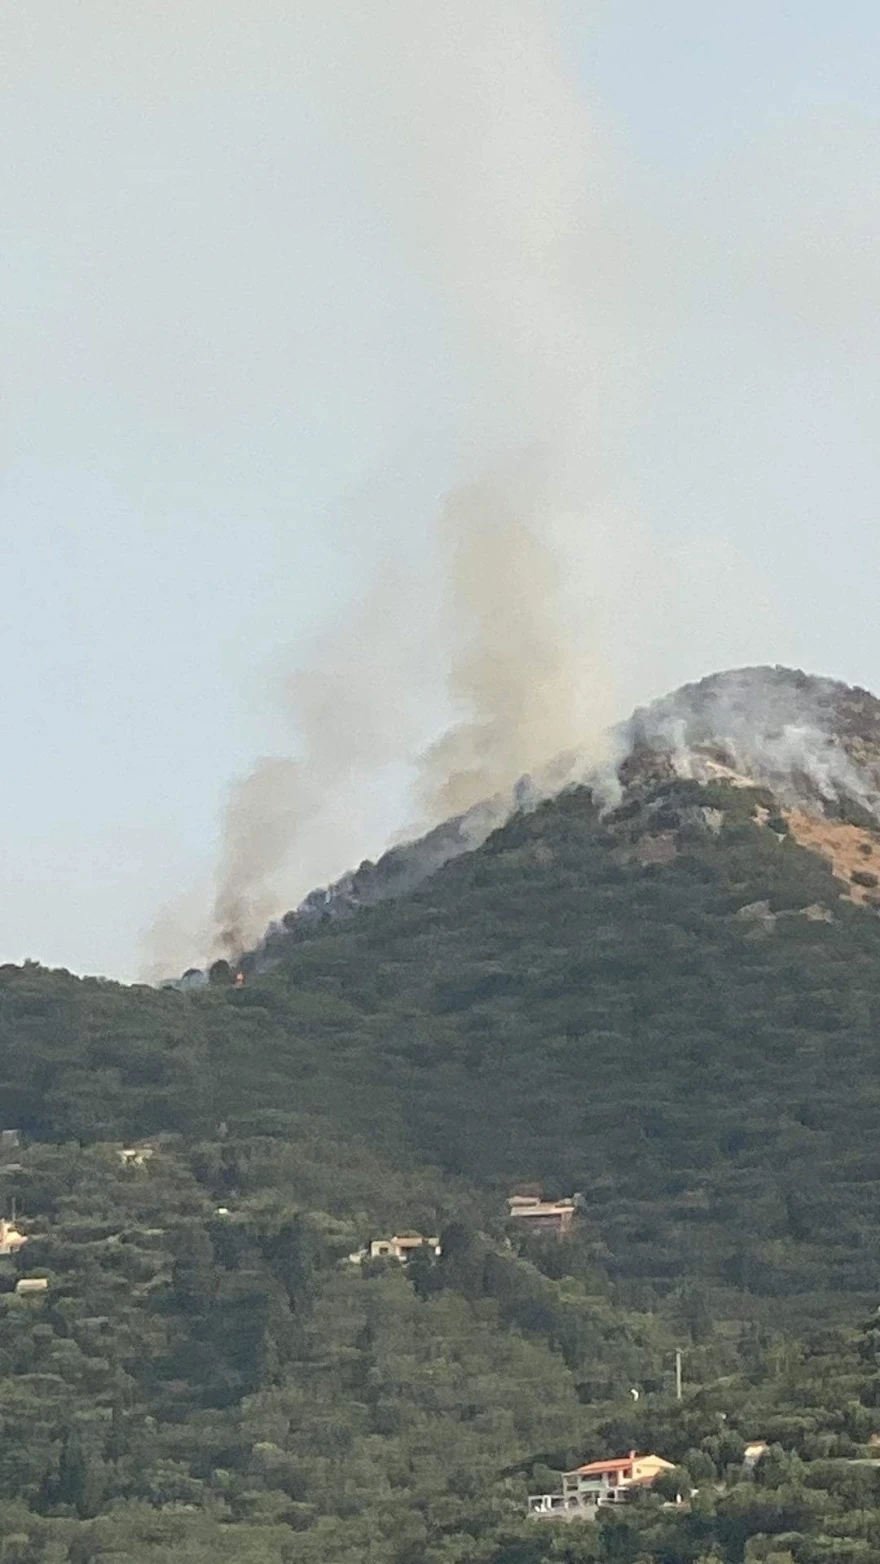 Φωτιές: Μάχη να μην μπουν οι φλόγες στο χωριό Βάτι στη Ρόδο - Εκκενώθηκε η περιοχή Λούτσες στην Κέρκυρα